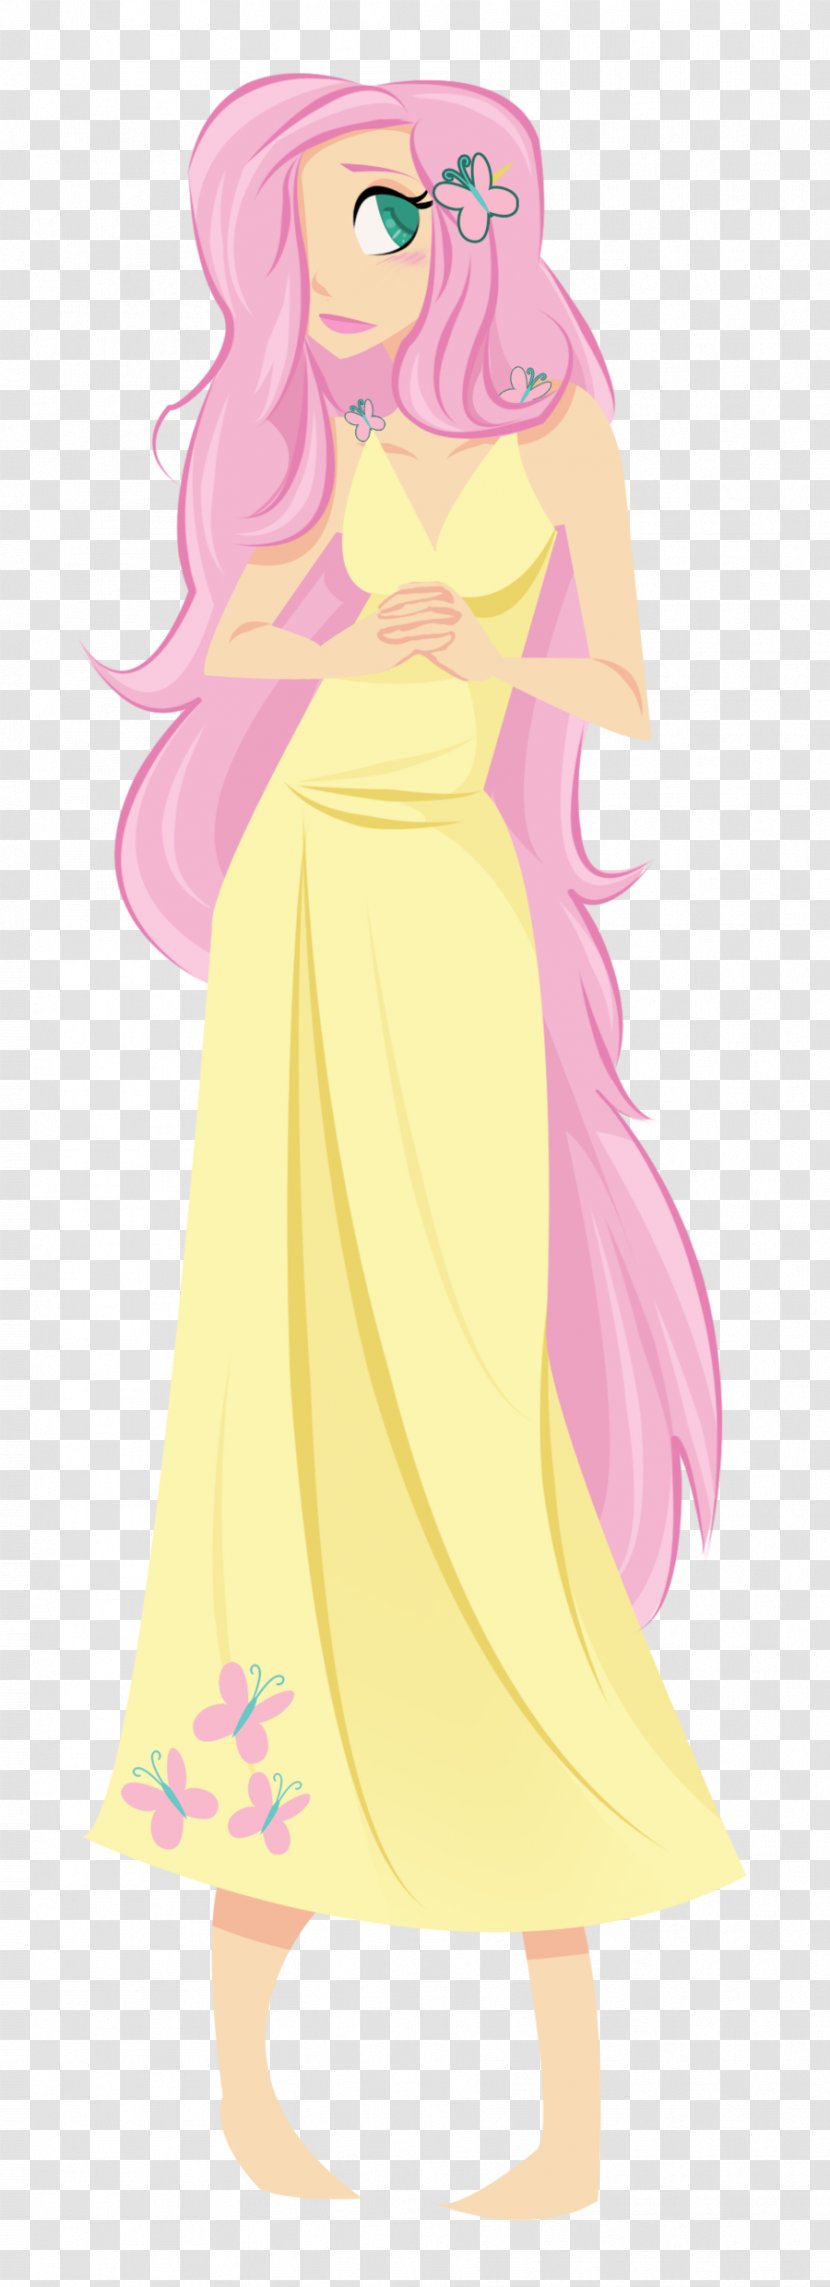 Fluttershy Princess Celestia Twilight Sparkle Pinkie Pie DeviantArt - Watercolor - Centaur Transparent PNG